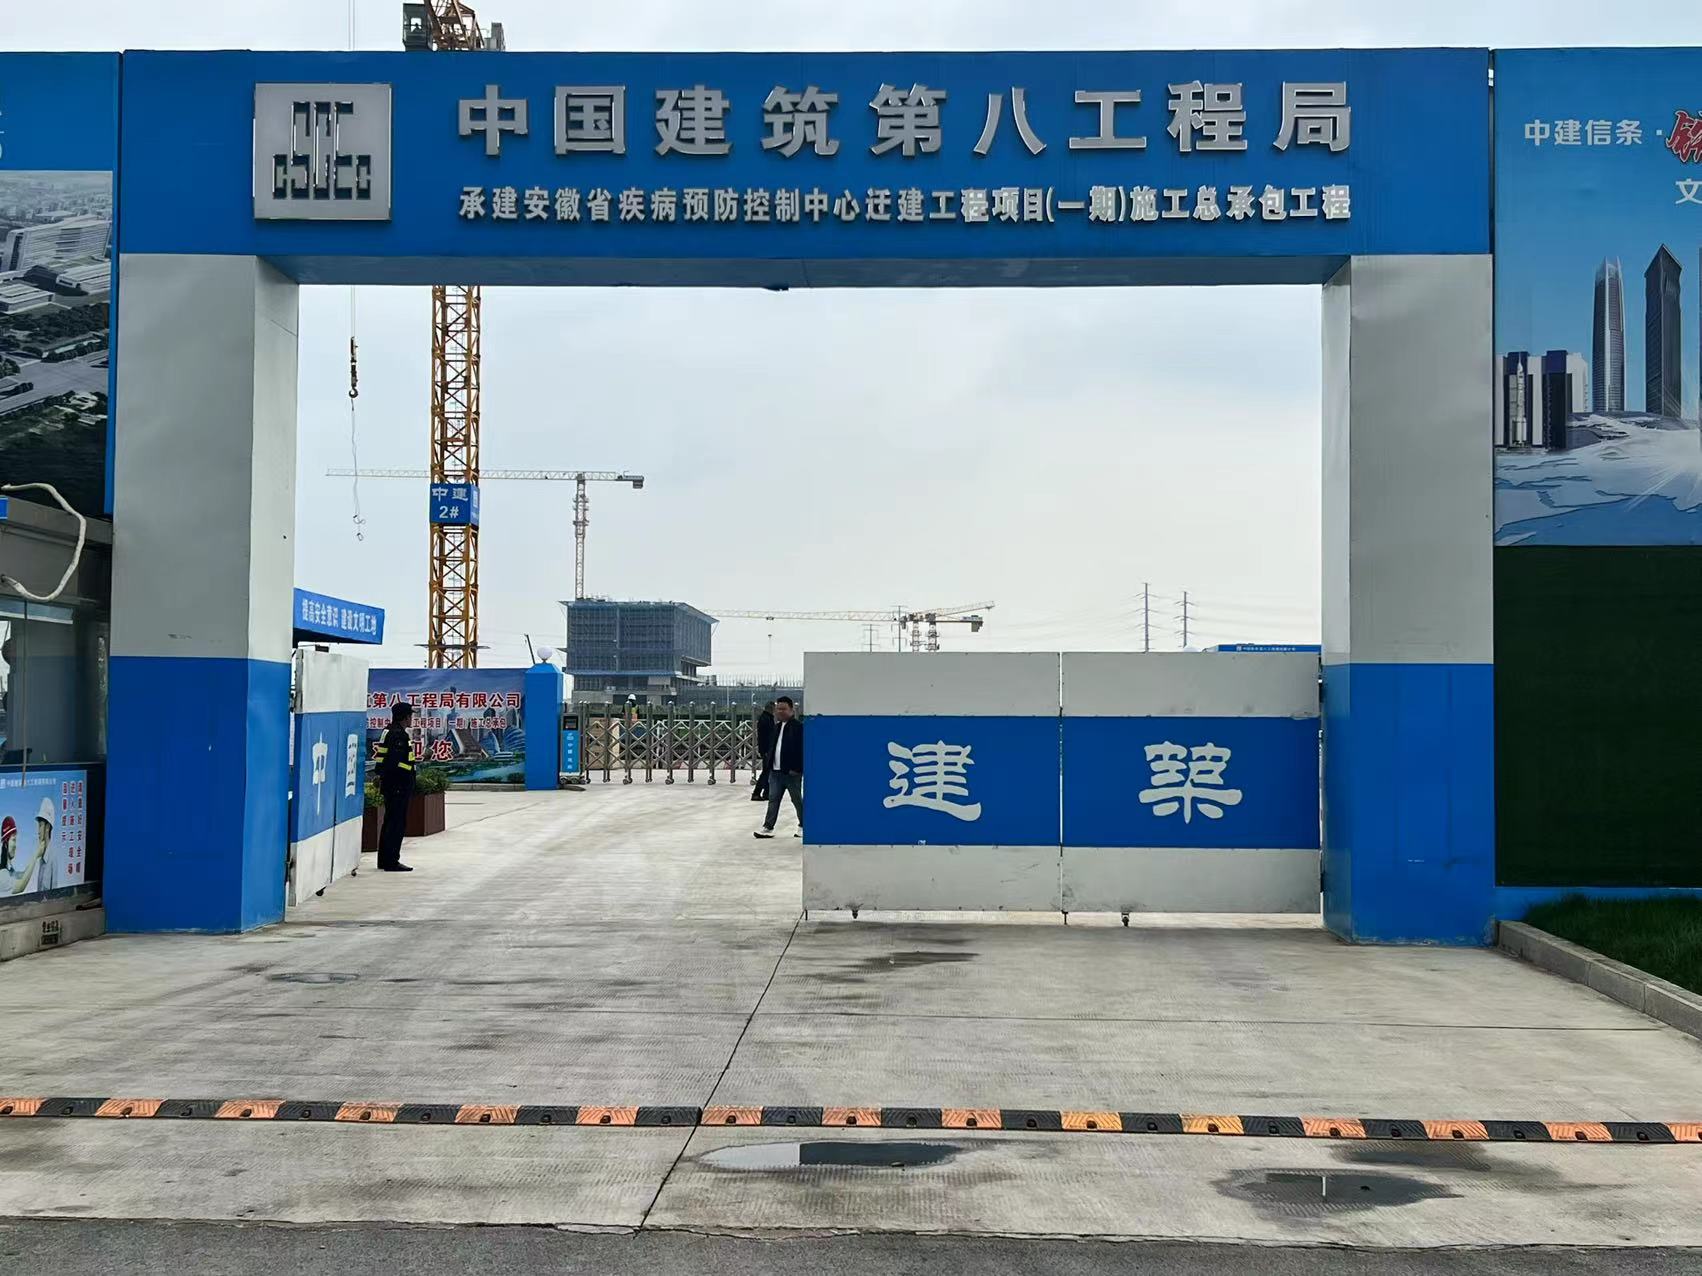 南京安徽省预防疾病控制中心